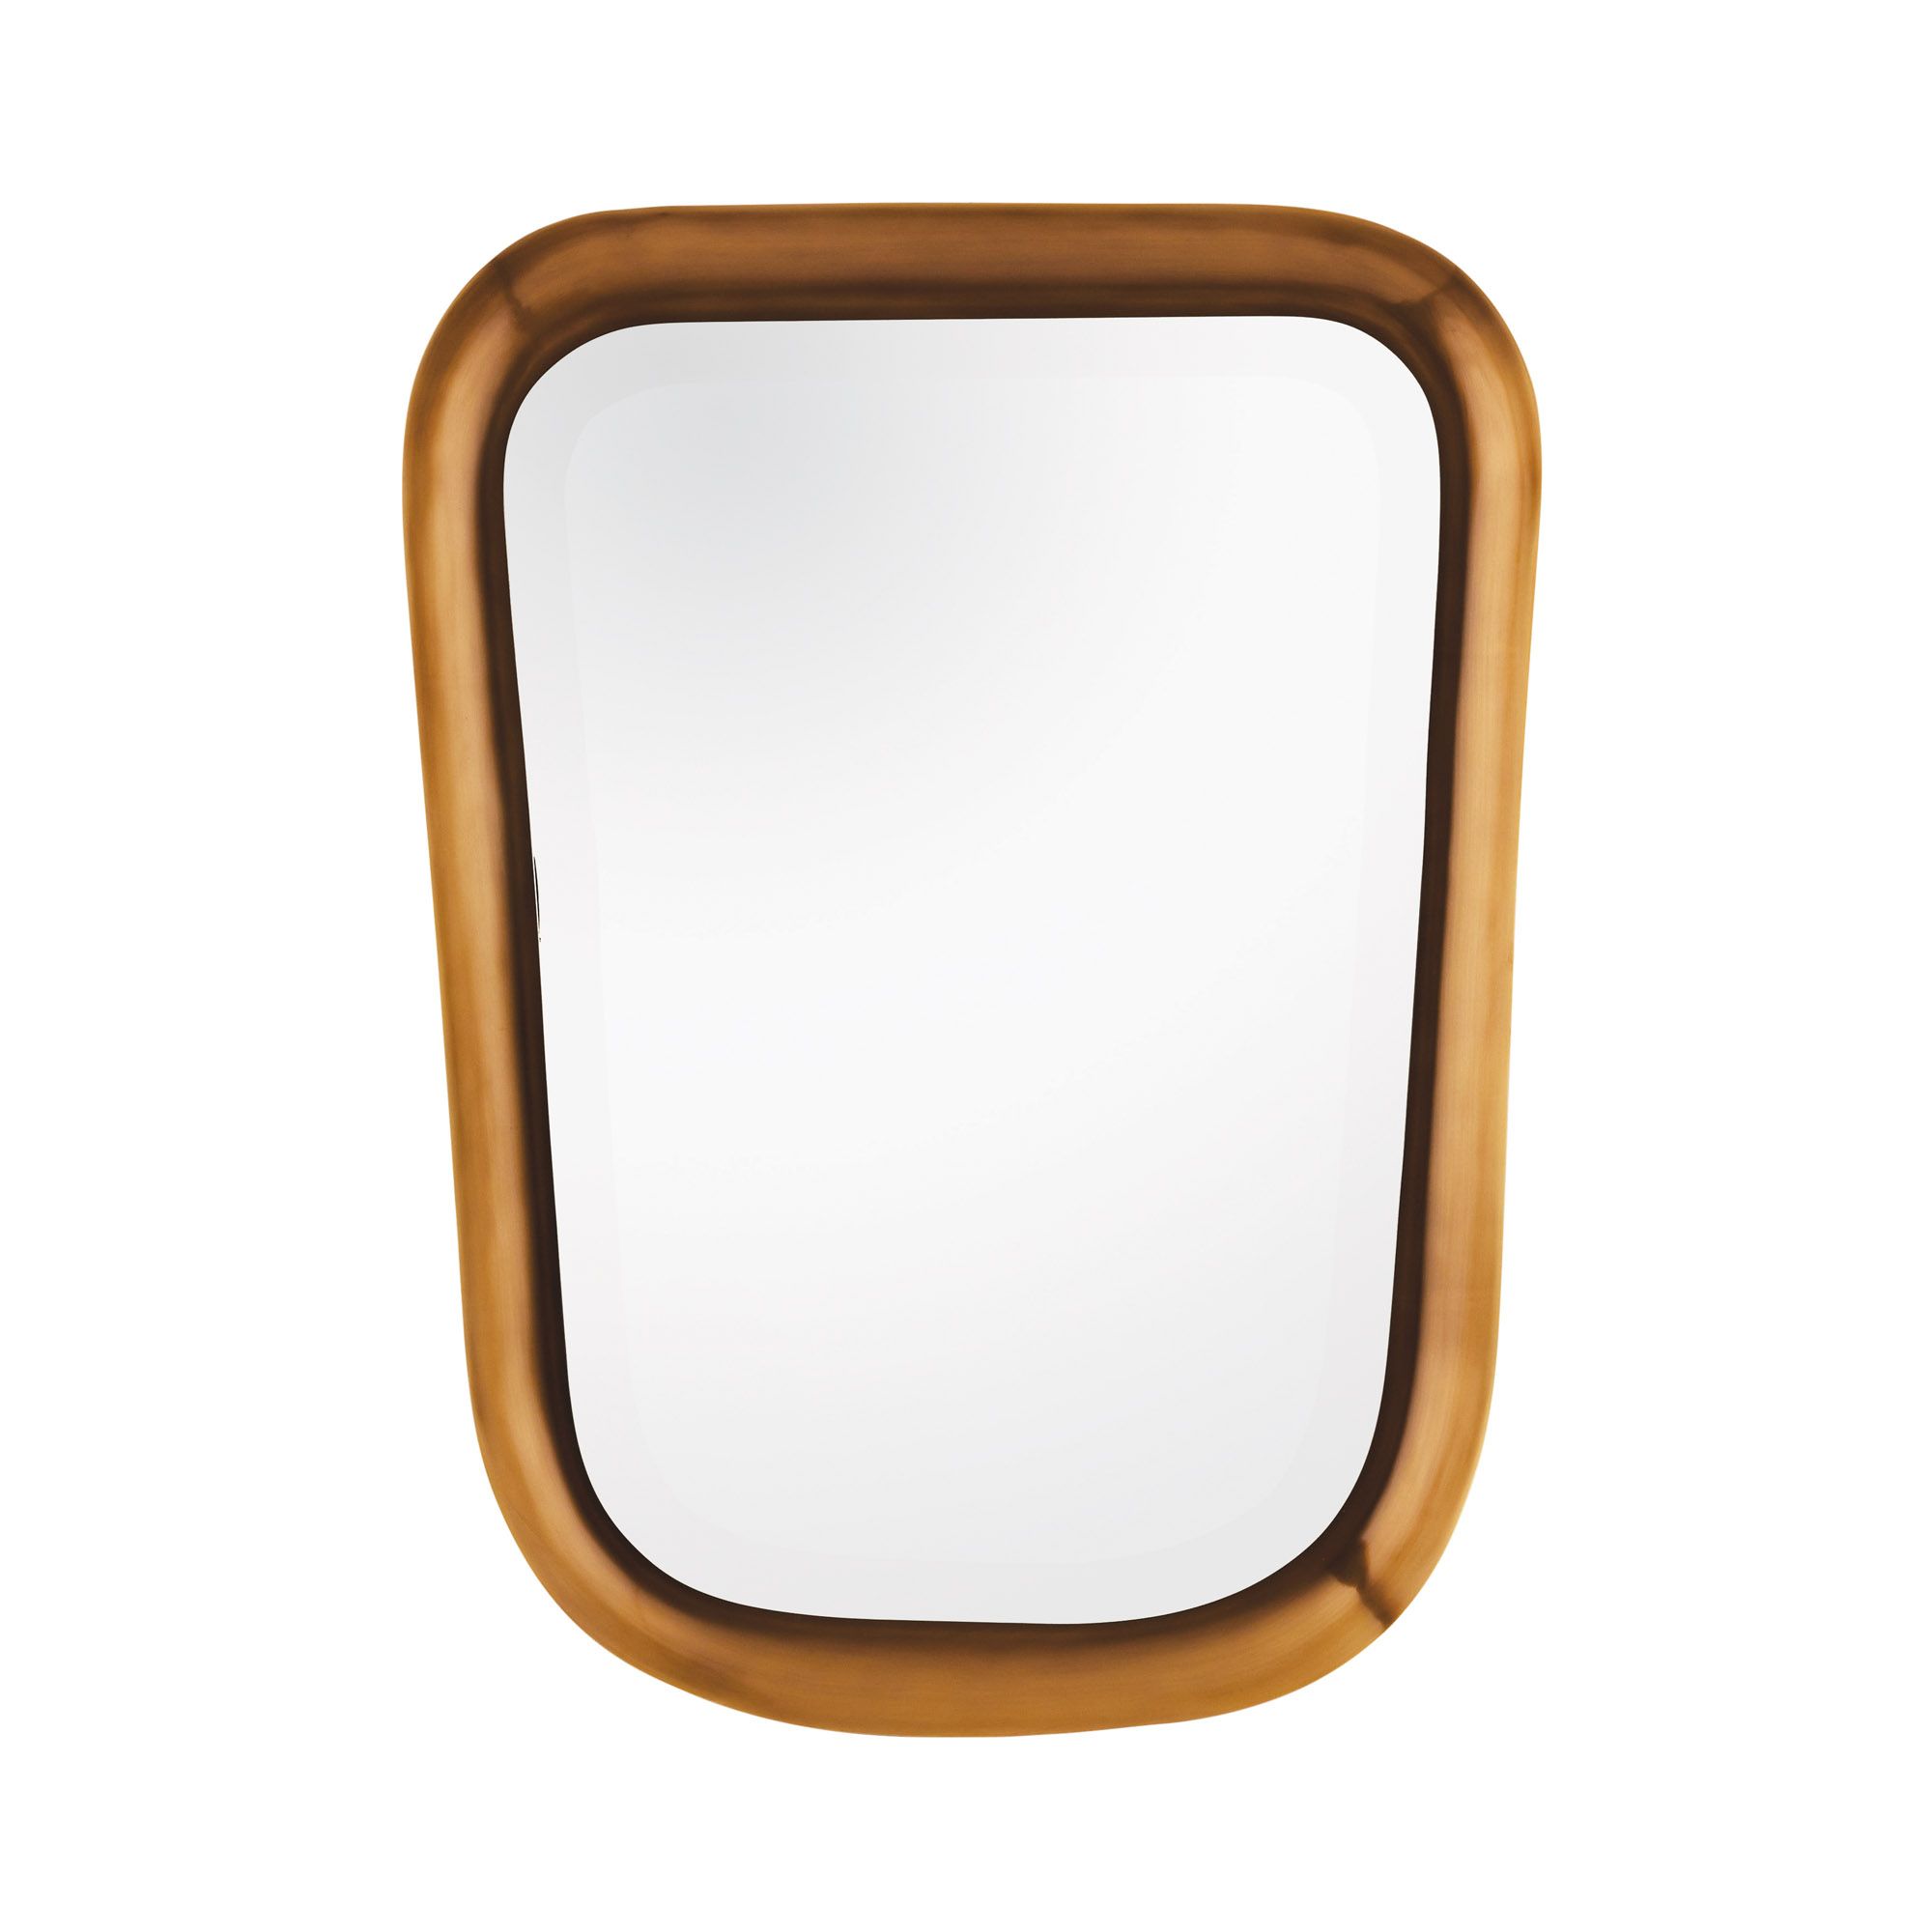 Купить Настенное зеркало Trento Mirror в интернет-магазине roooms.ru